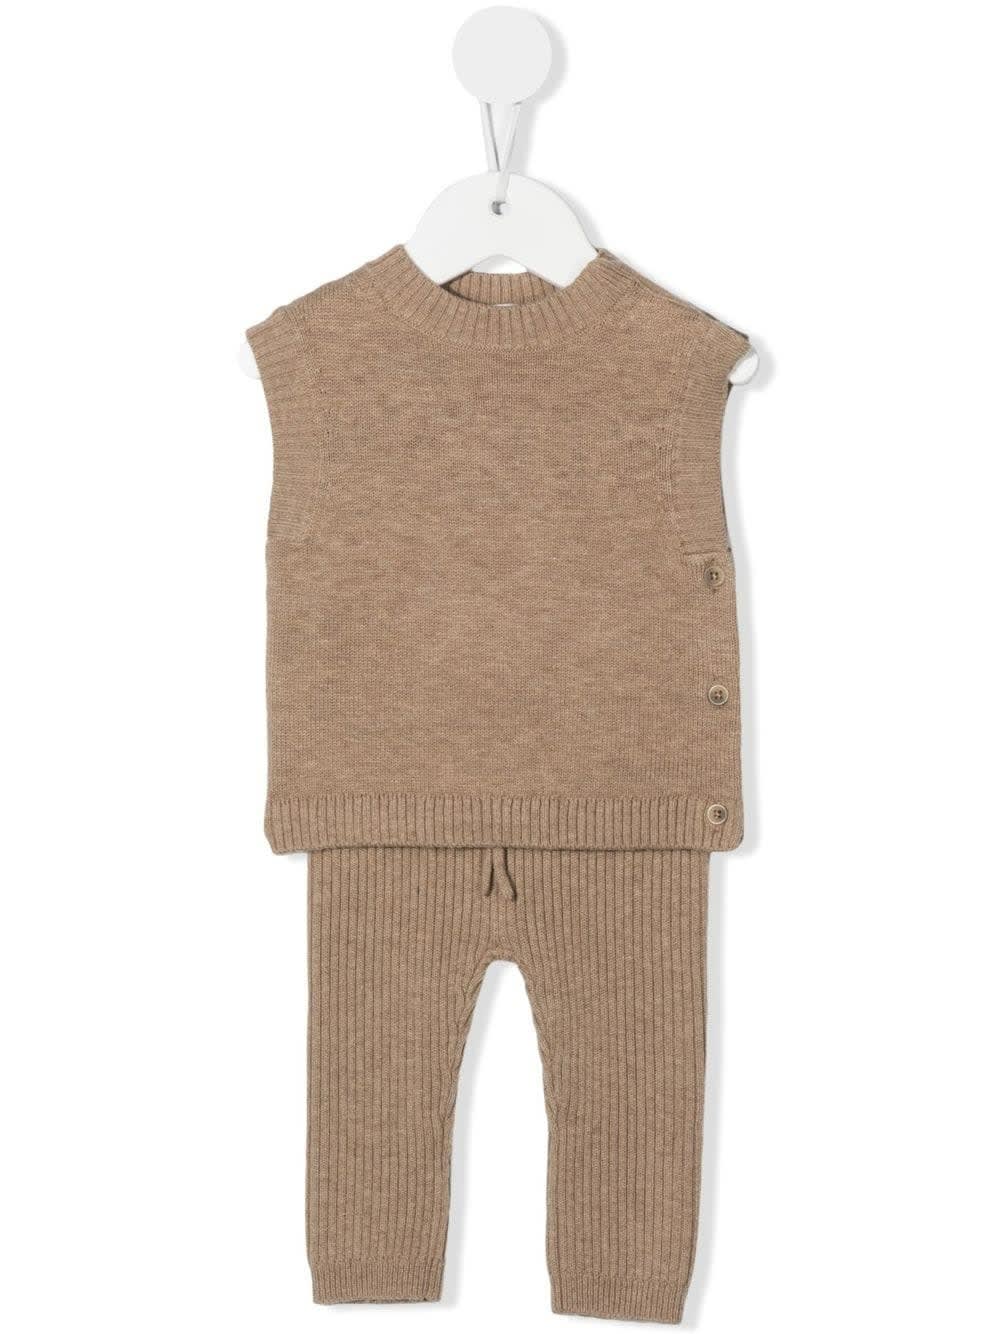 voorkomen Gearceerd Veroveraar Bonpoint Babies' Beige Knitted Wool Trousers Set | ModeSens